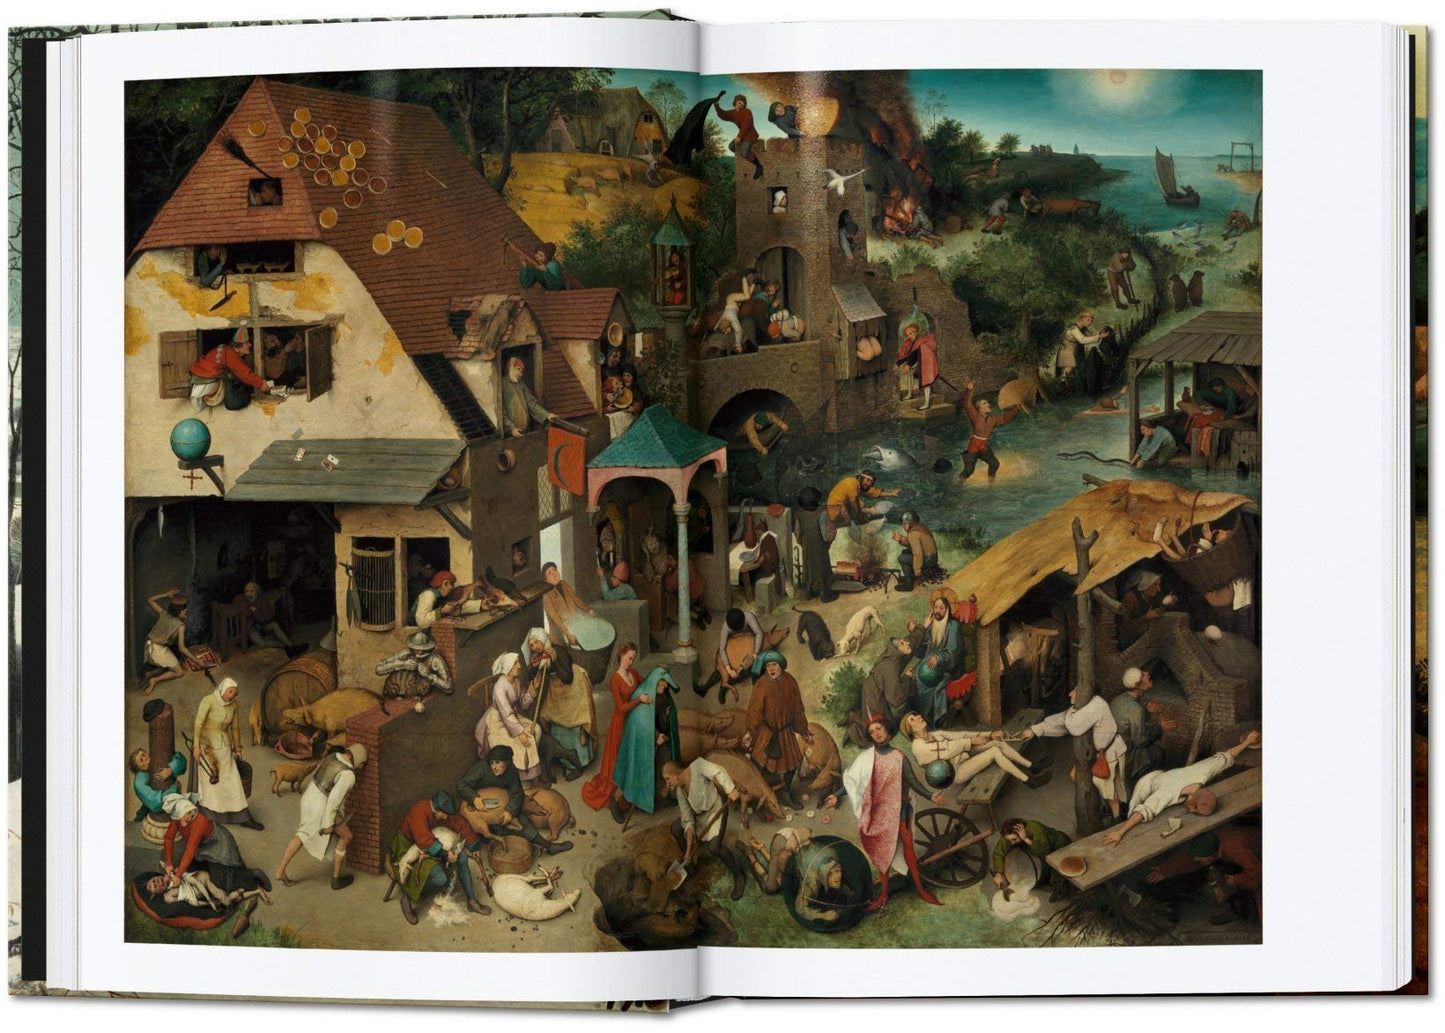 40 Pieter Bruegel: The Complete Paintings